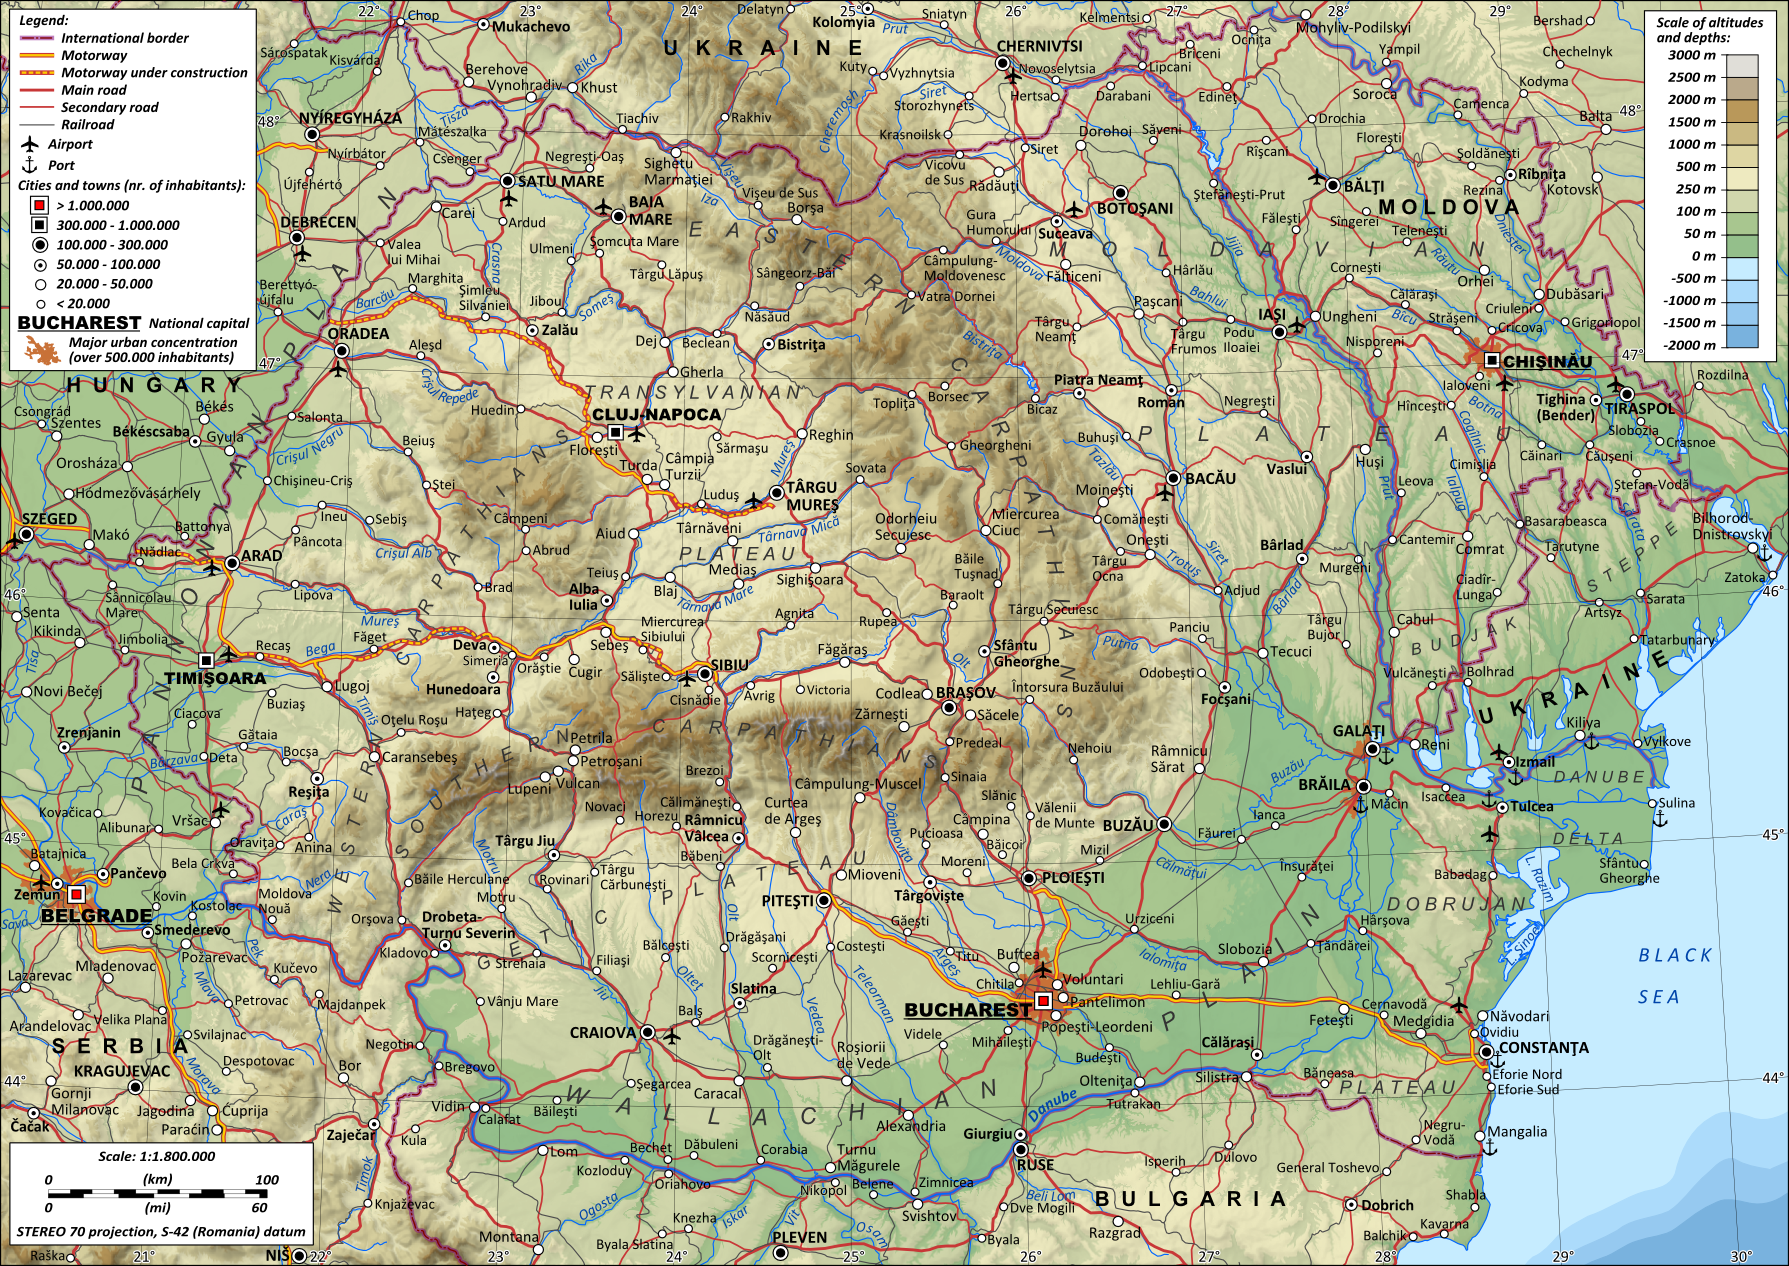 Romania_general_map-en.png